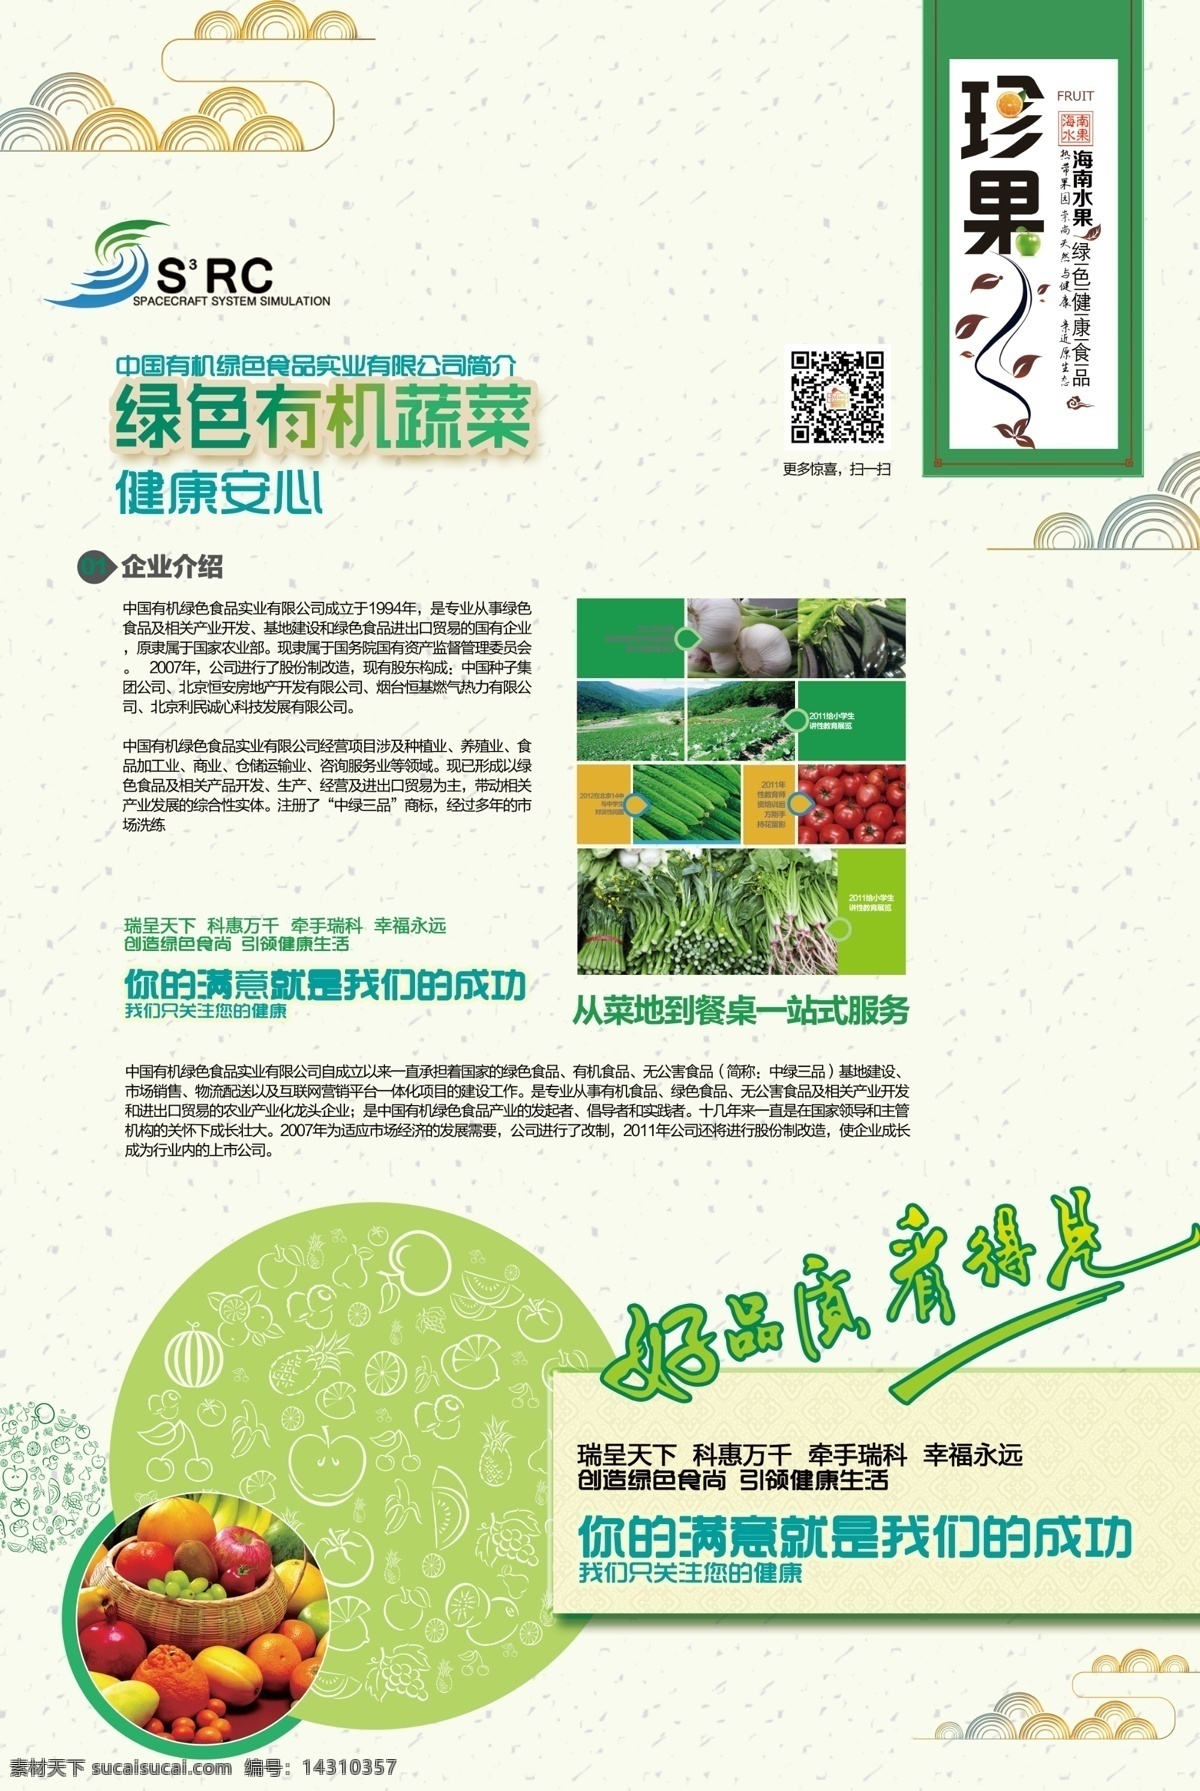 水果海报 有机果蔬海报 果蔬海报 企业介绍 psd素材 绿色海报 水果 蔬菜 底纹花纹 中国花纹 线稿水果 白色